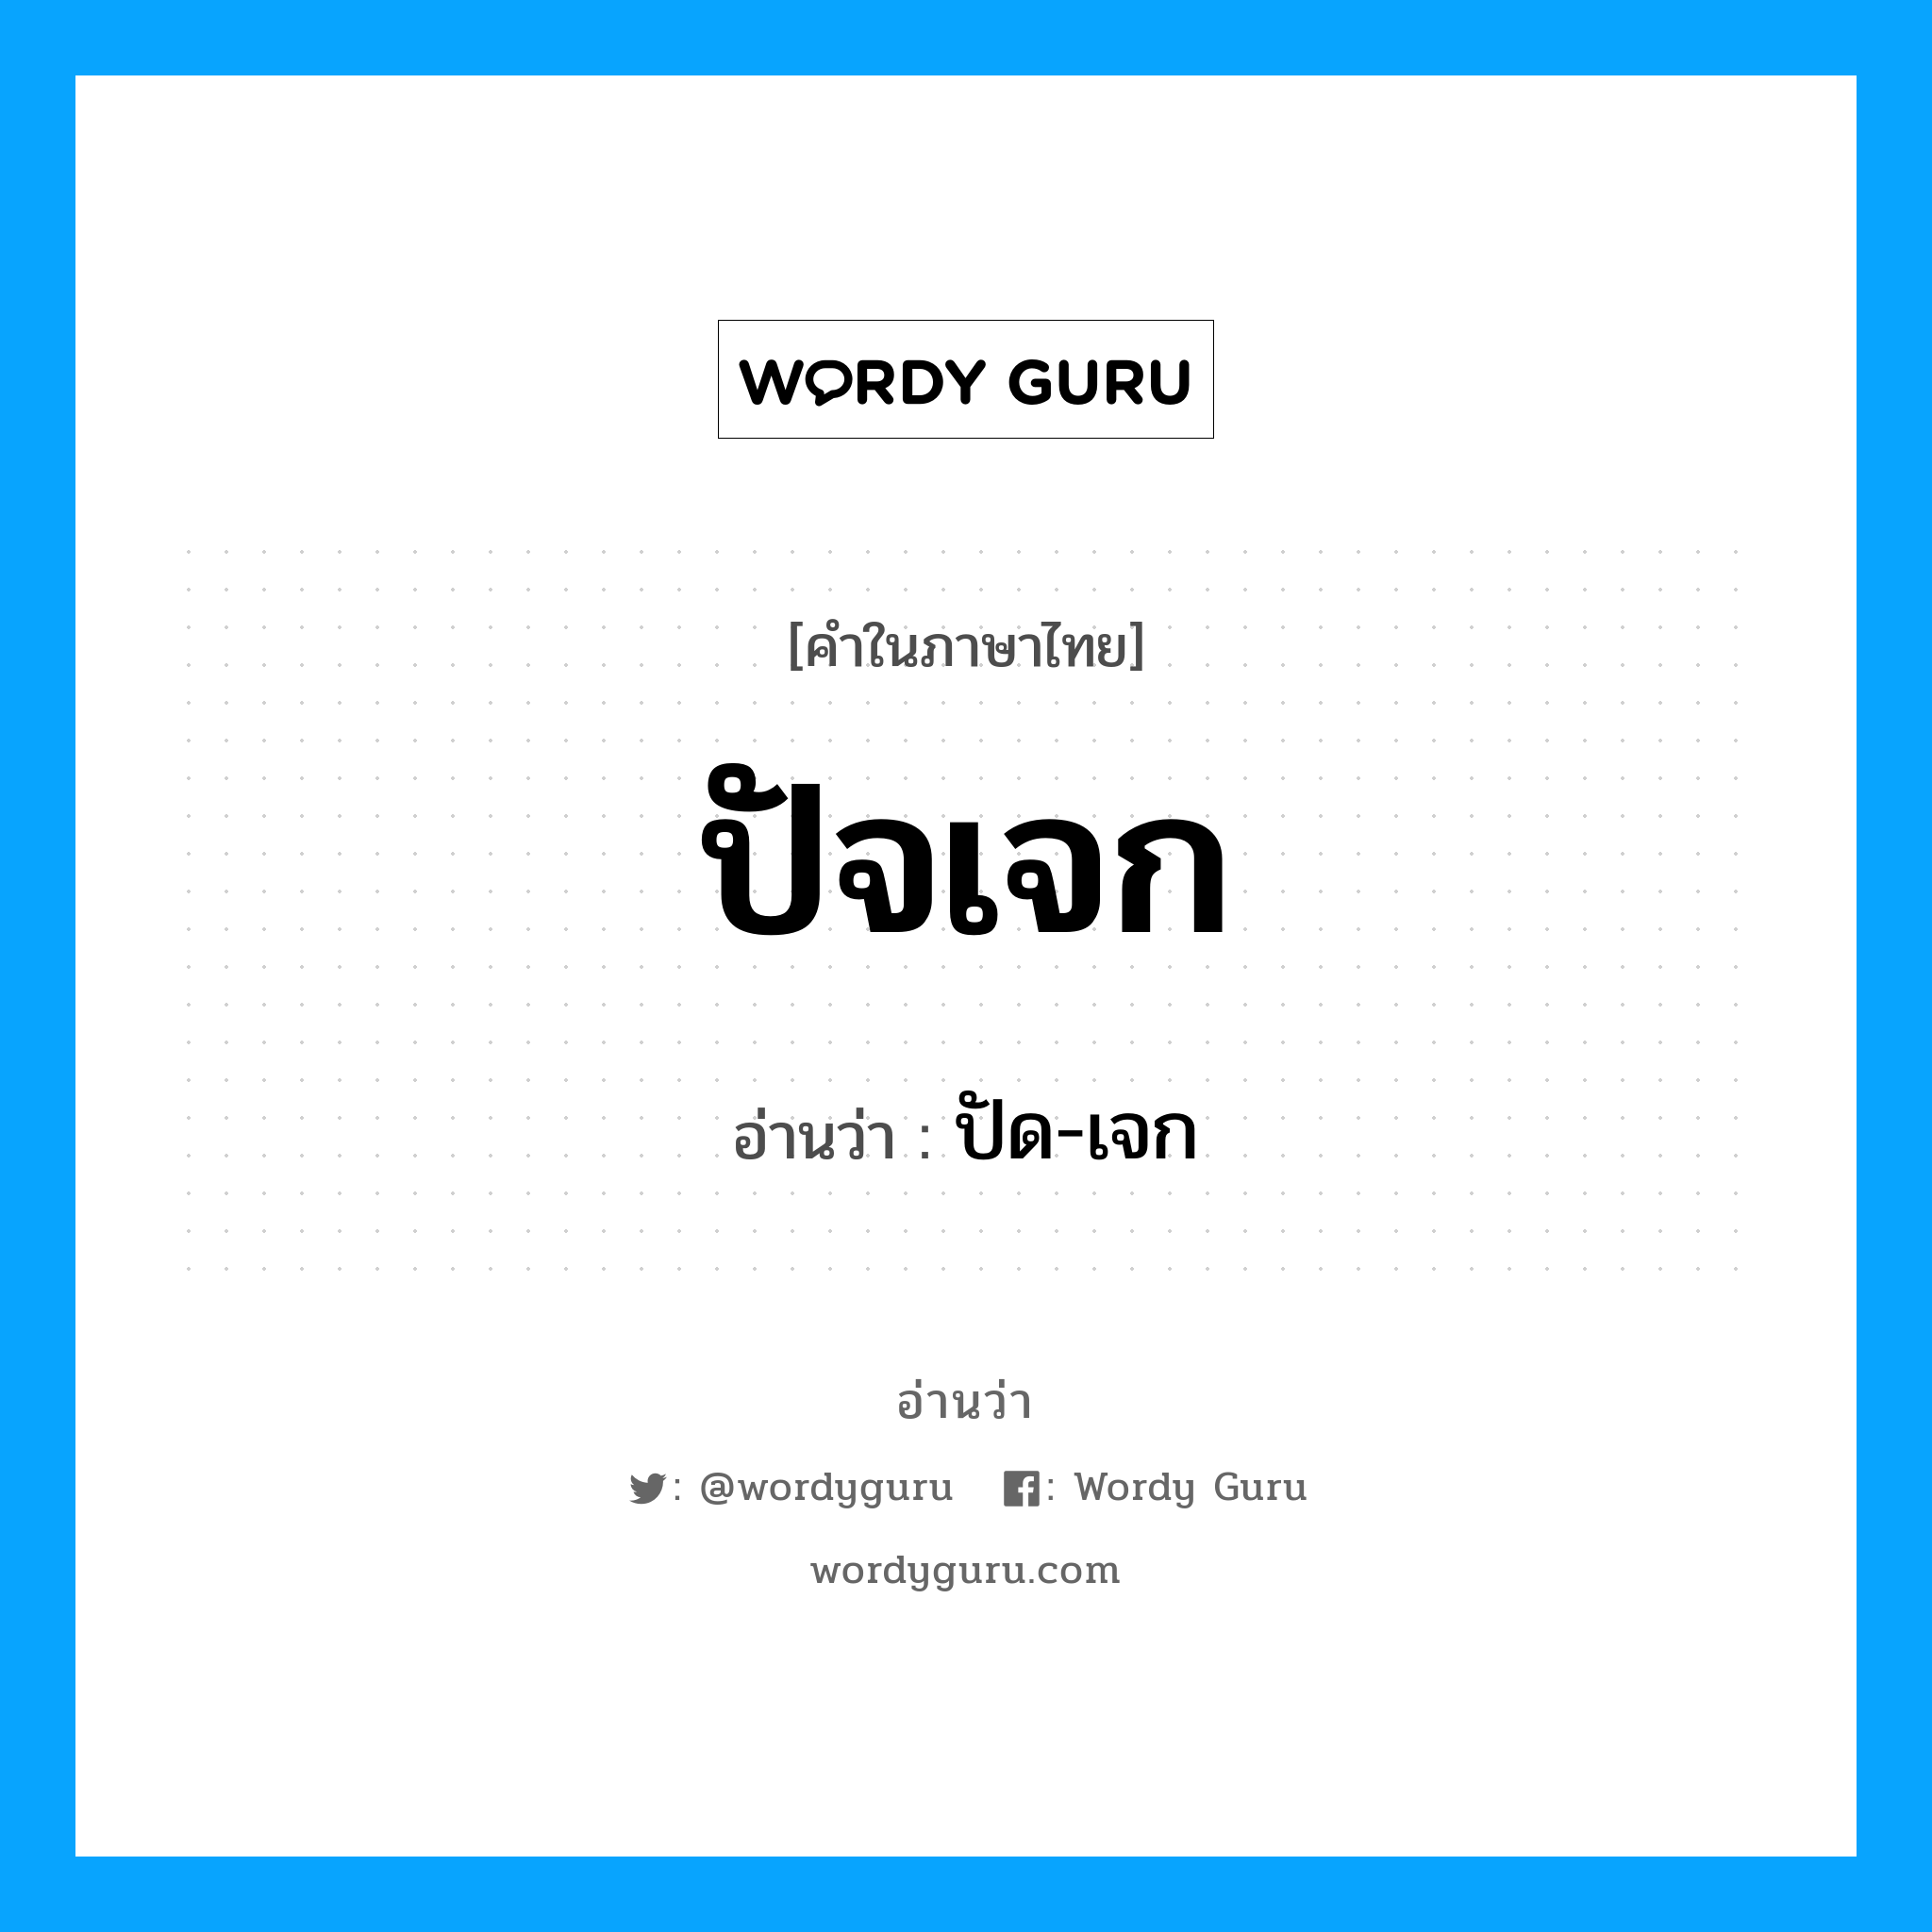 ปัด-เจก เป็นคำอ่านของคำไหน?, คำในภาษาไทย ปัด-เจก อ่านว่า ปัจเจก